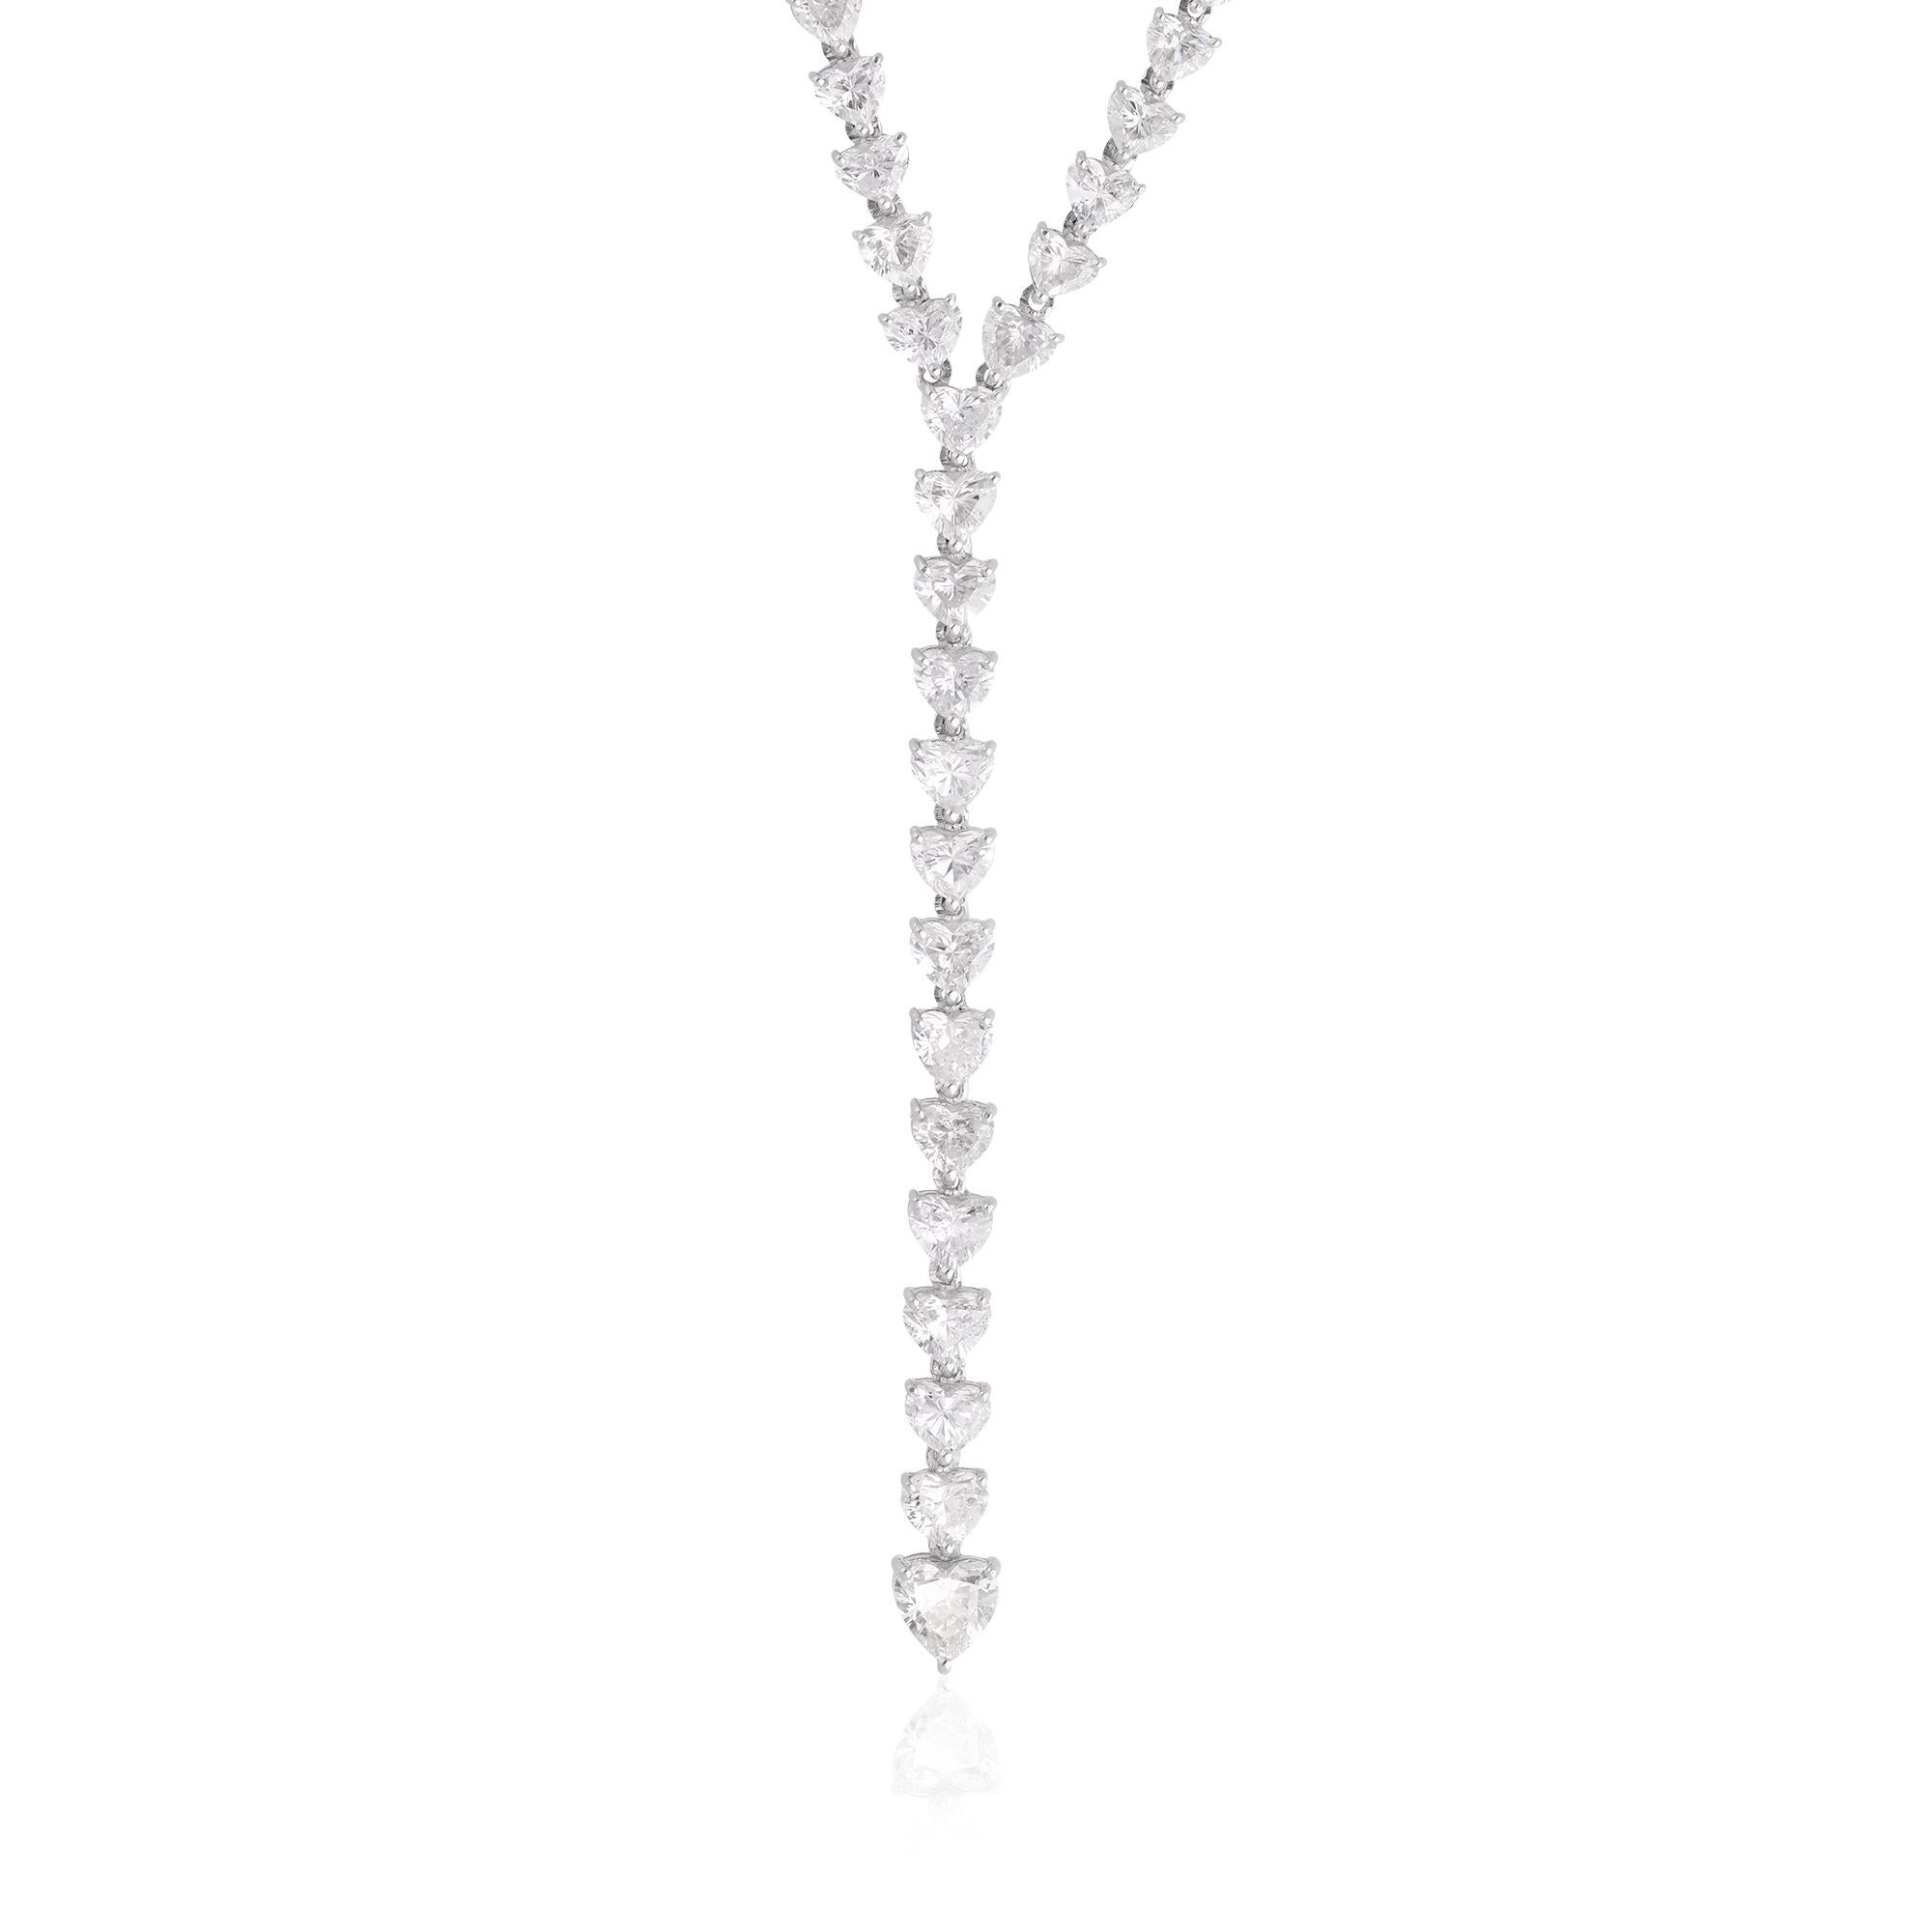 Betreten Sie das Reich des Luxus und der Romantik mit dieser atemberaubenden Real 6.84 Carat Heart Shape Diamond Lariat Necklace, die in 18 Karat Weißgold gefertigt ist. Dieses Schmuckstück ist ein Zeugnis von Liebe, Eleganz und zeitloser Schönheit,